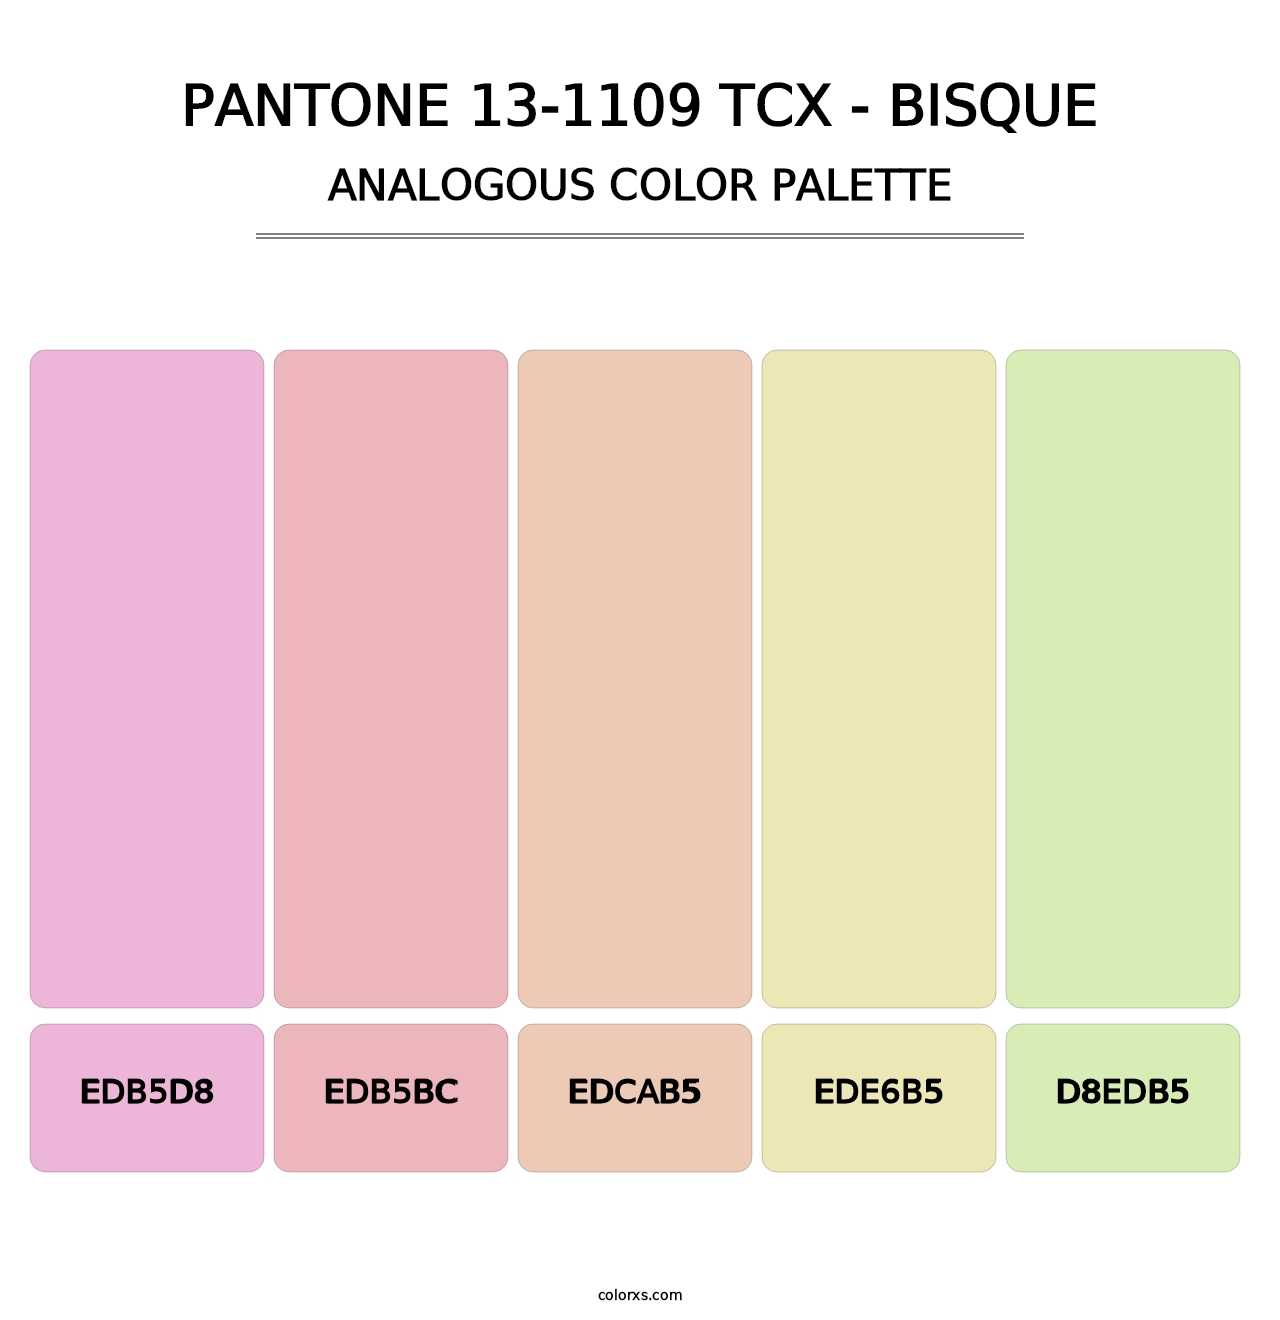 PANTONE 13-1109 TCX - Bisque - Analogous Color Palette